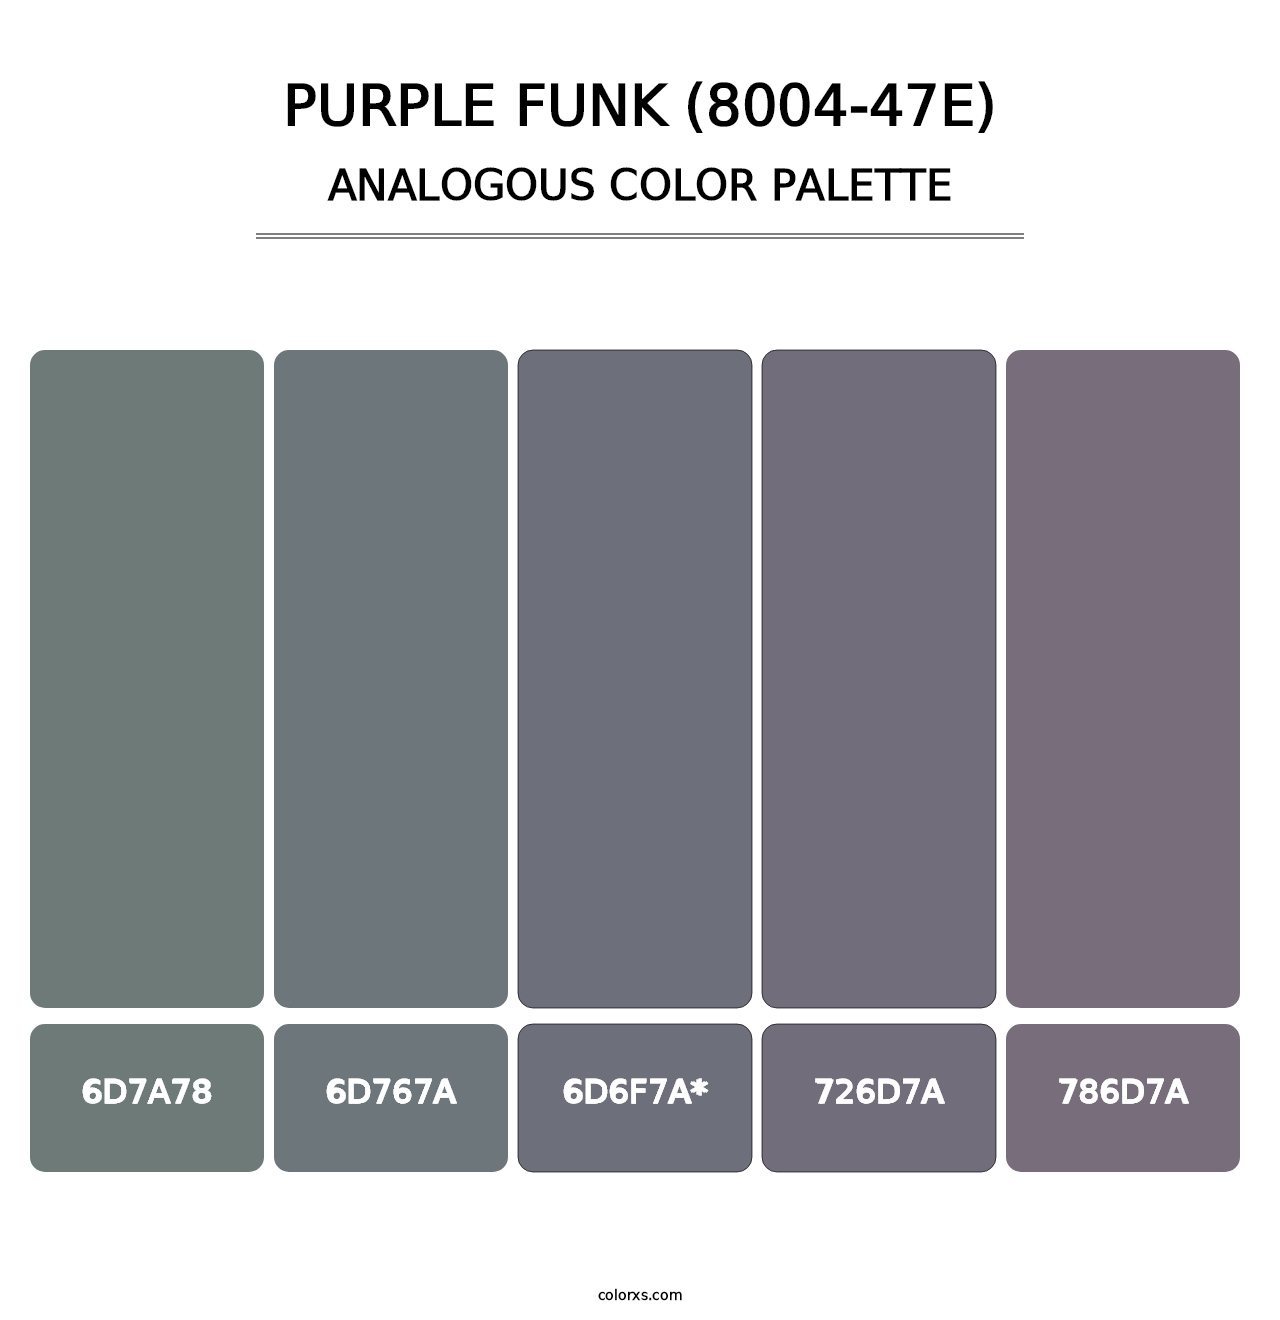 Purple Funk (8004-47E) - Analogous Color Palette